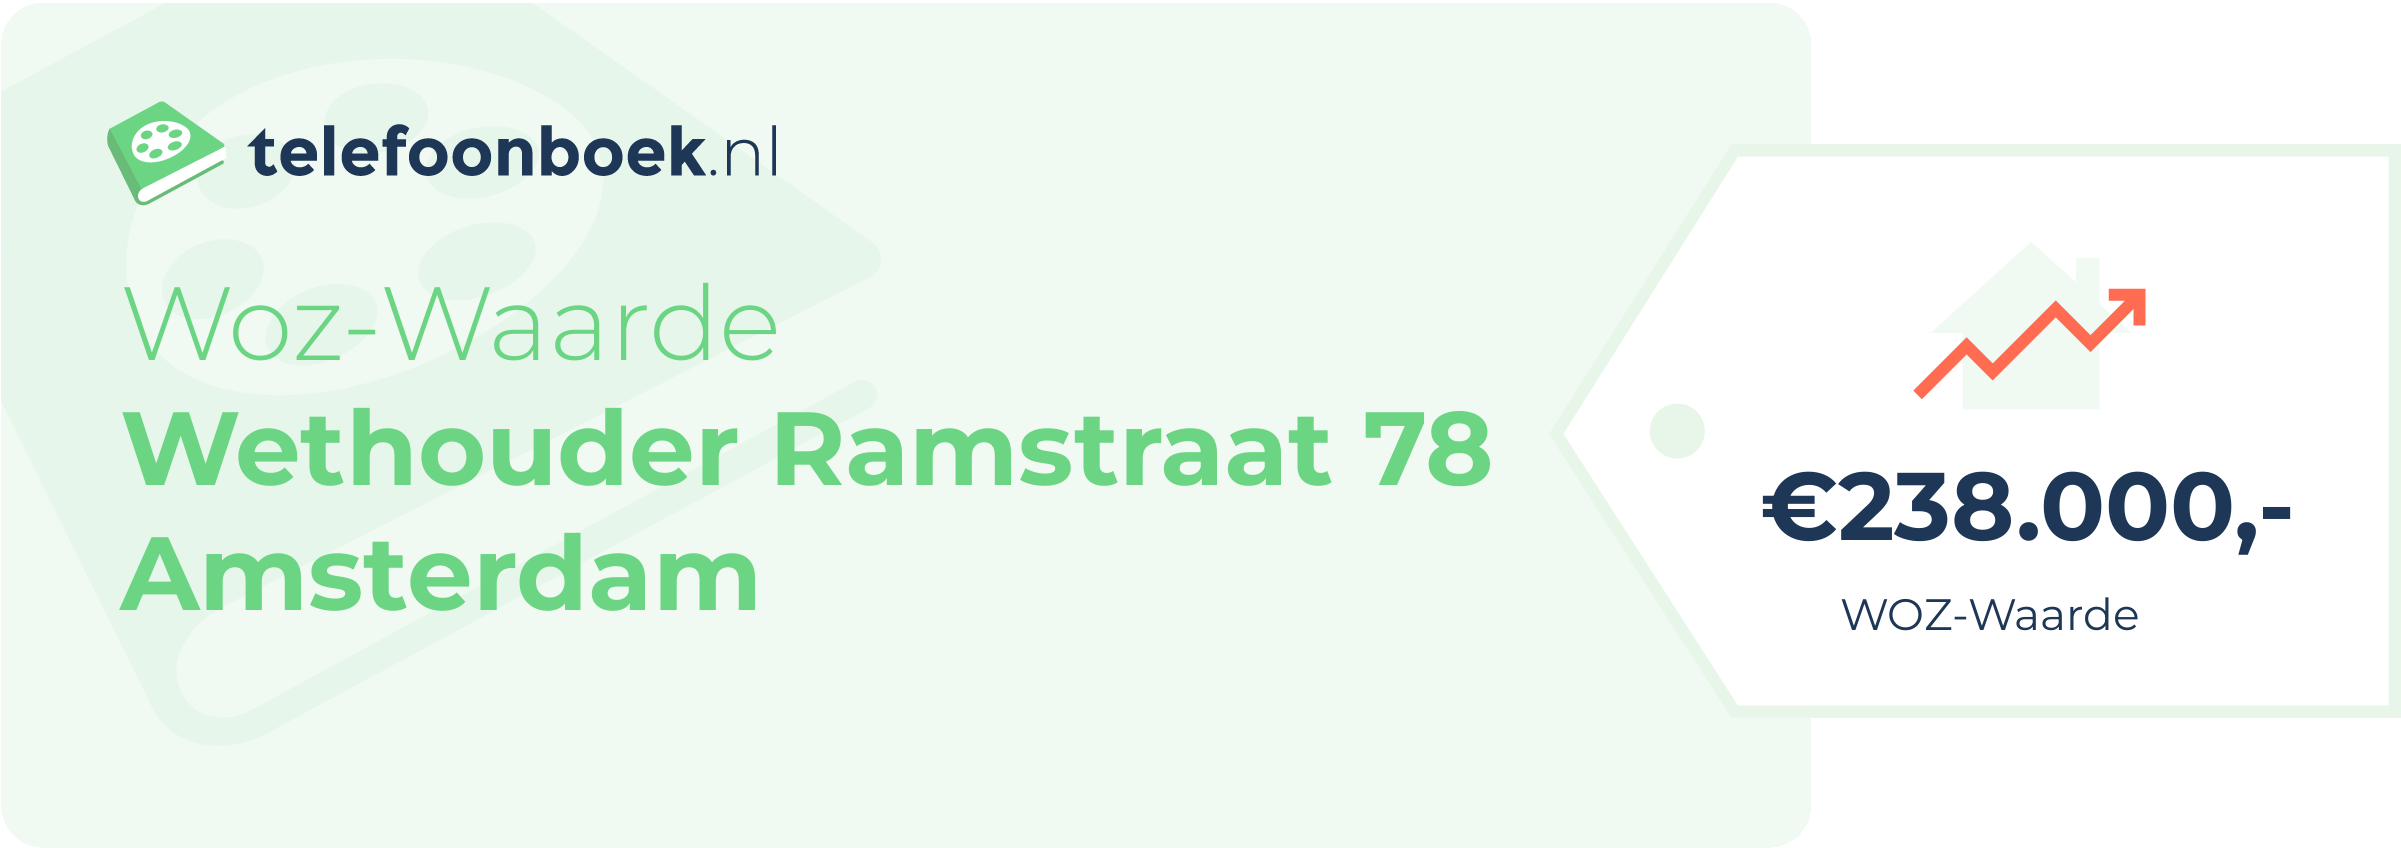 WOZ-waarde Wethouder Ramstraat 78 Amsterdam